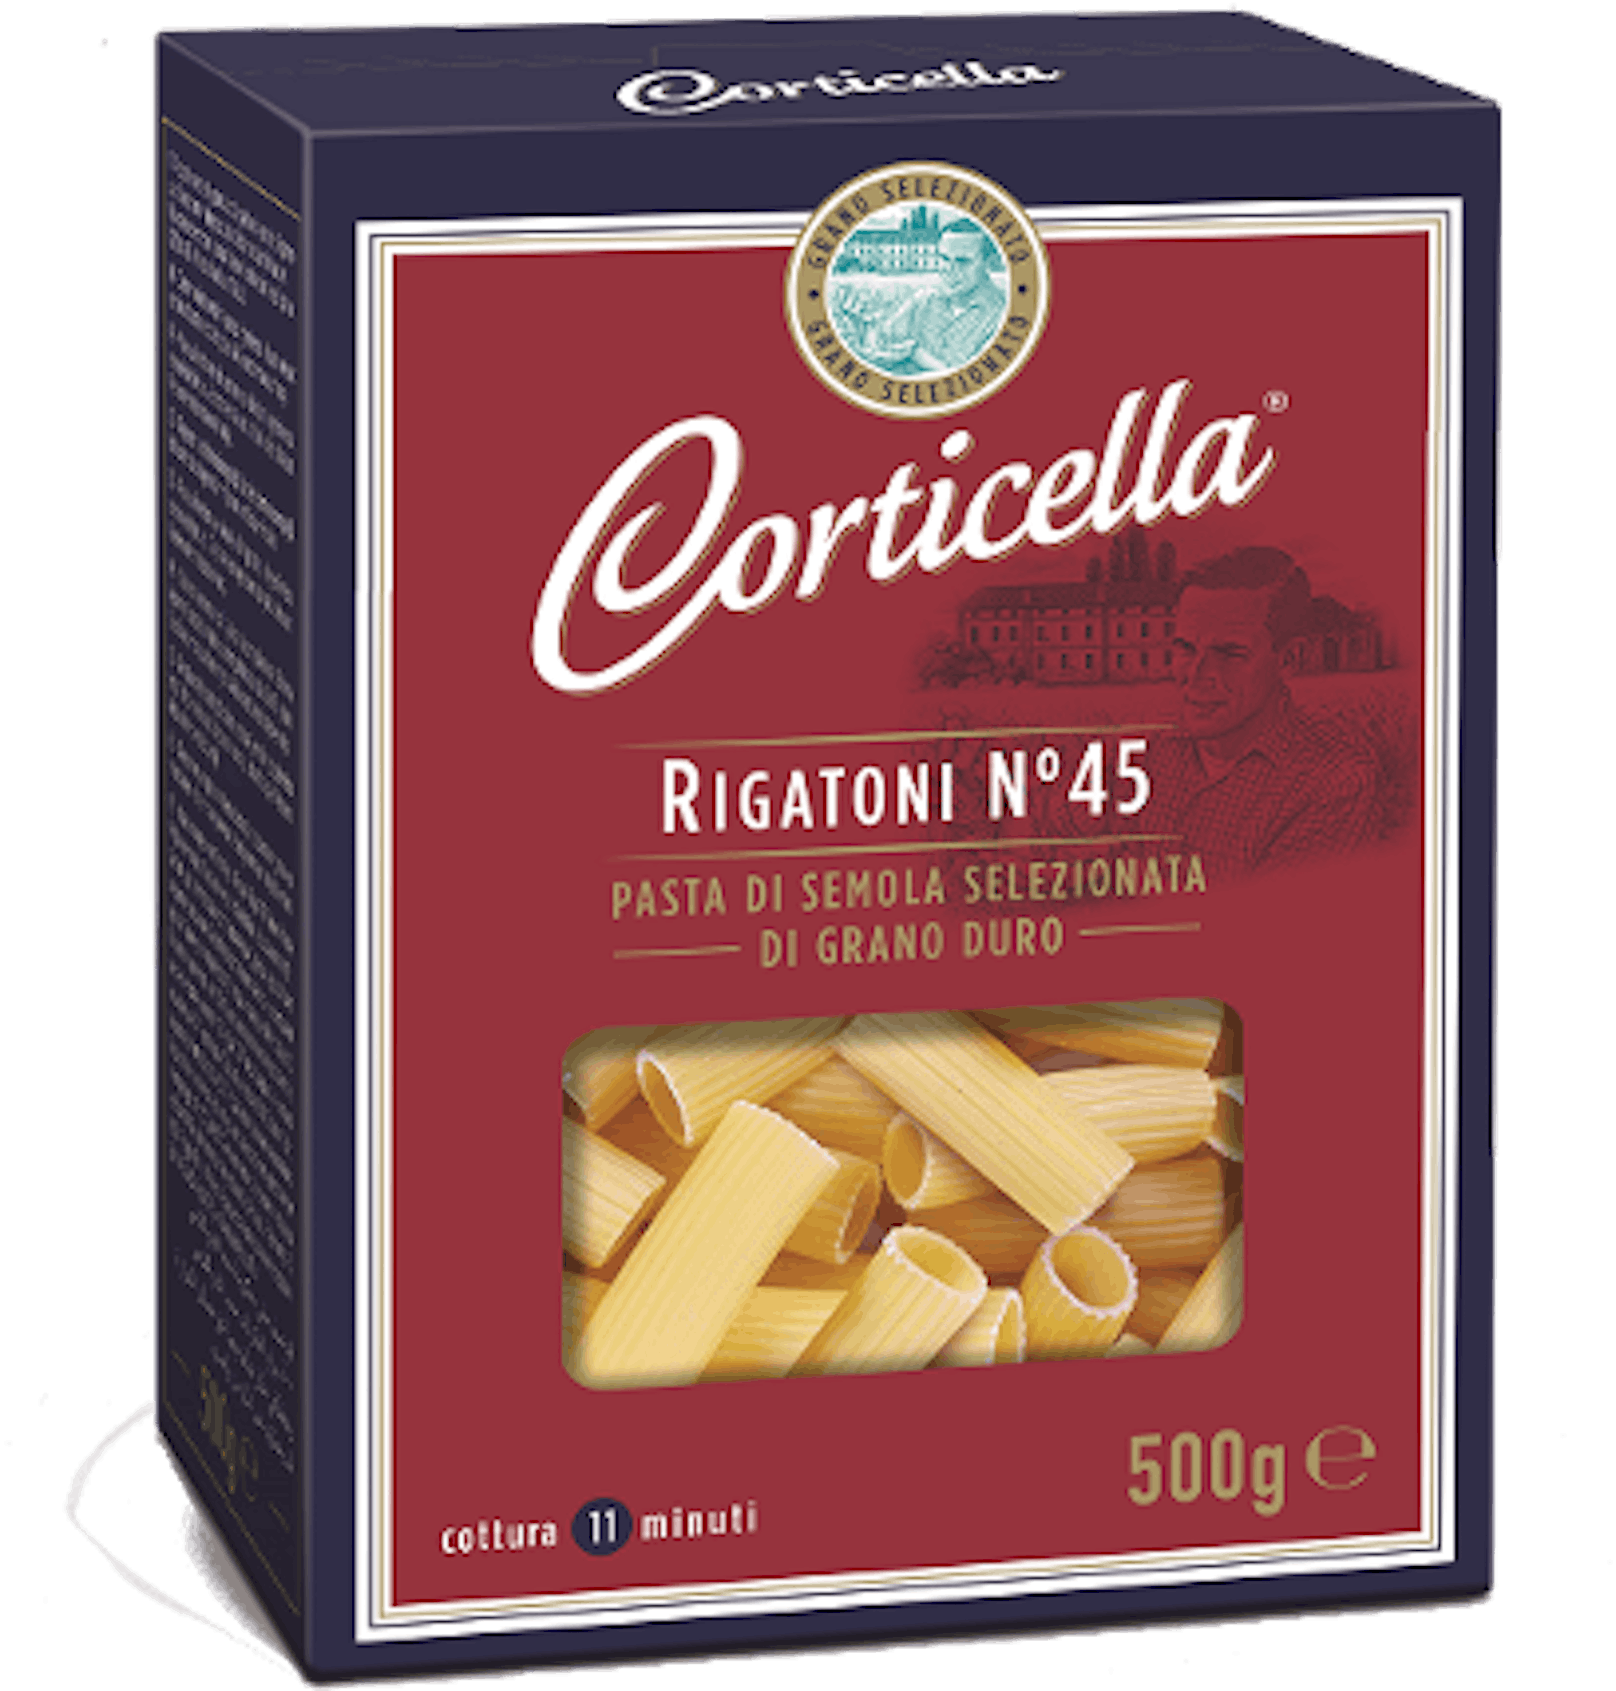 Corticella Rigatoni No. 45